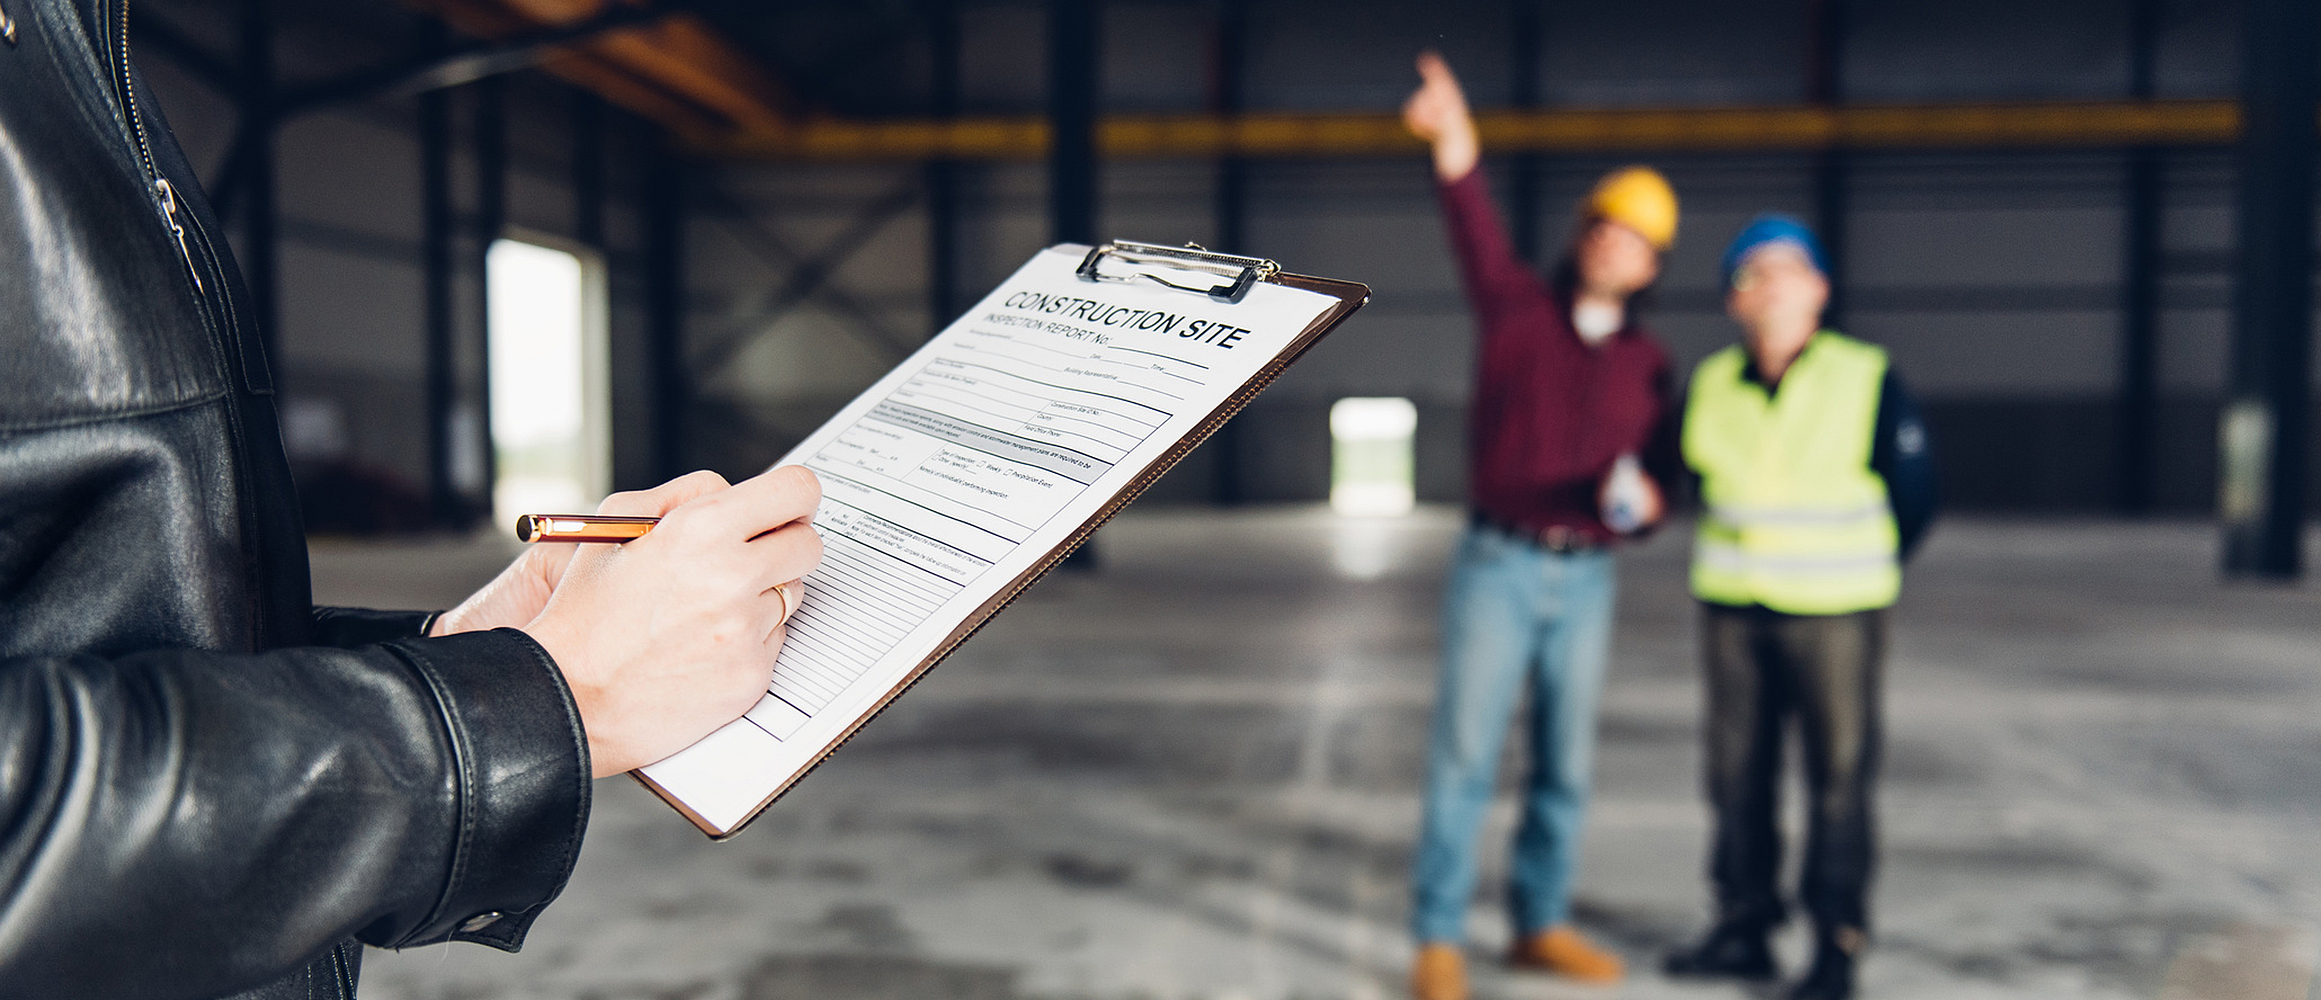 Eine Person füllt eine Gefährdungsbeurteilung aus, während ein Bauherr einer Aufsichtsperson die Baustelle zeigt